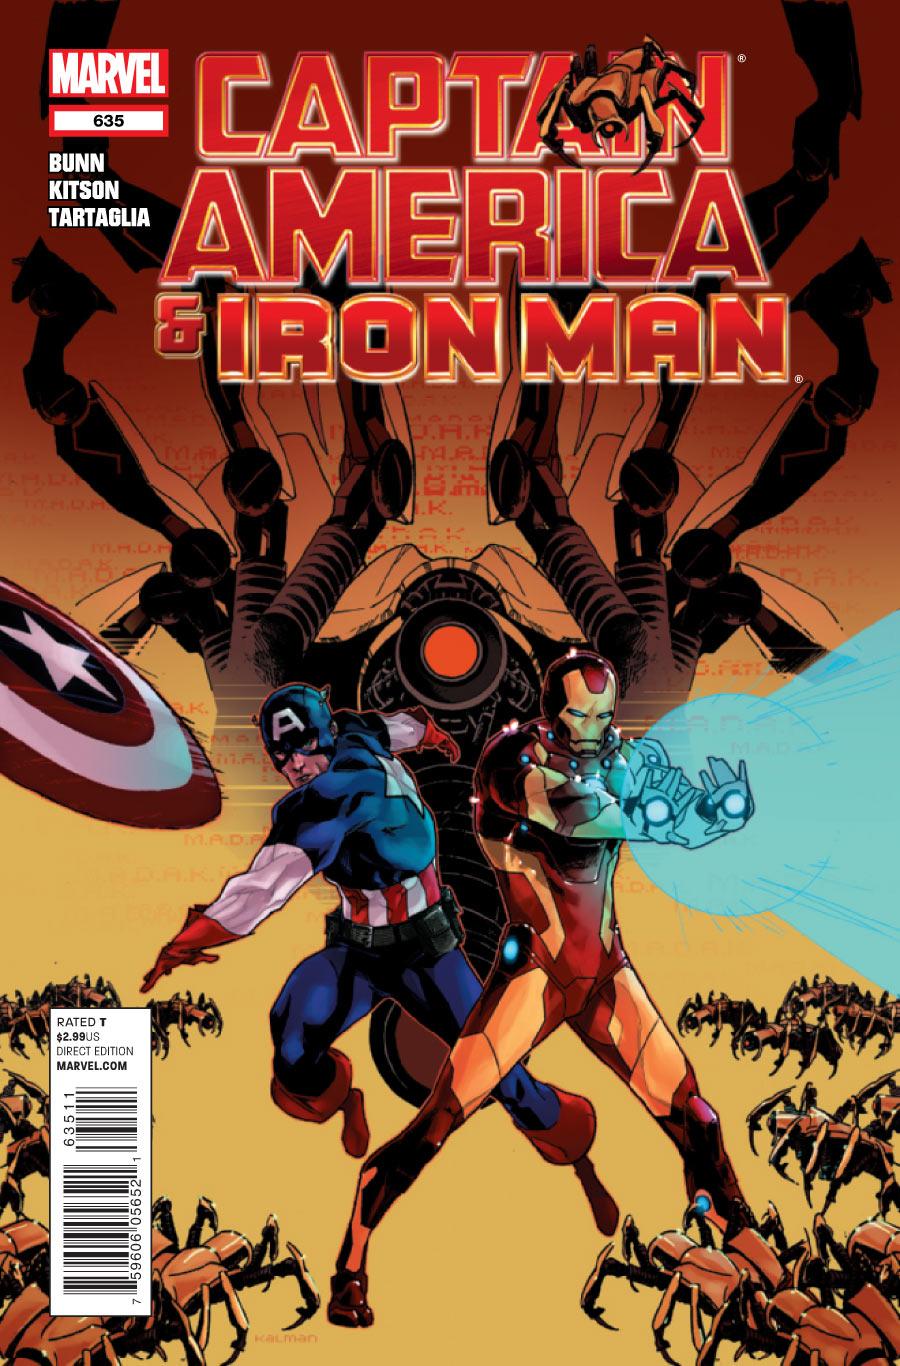 REVIEW: Captain America & Iron Man #635 - Major Spoilers - Comic Book